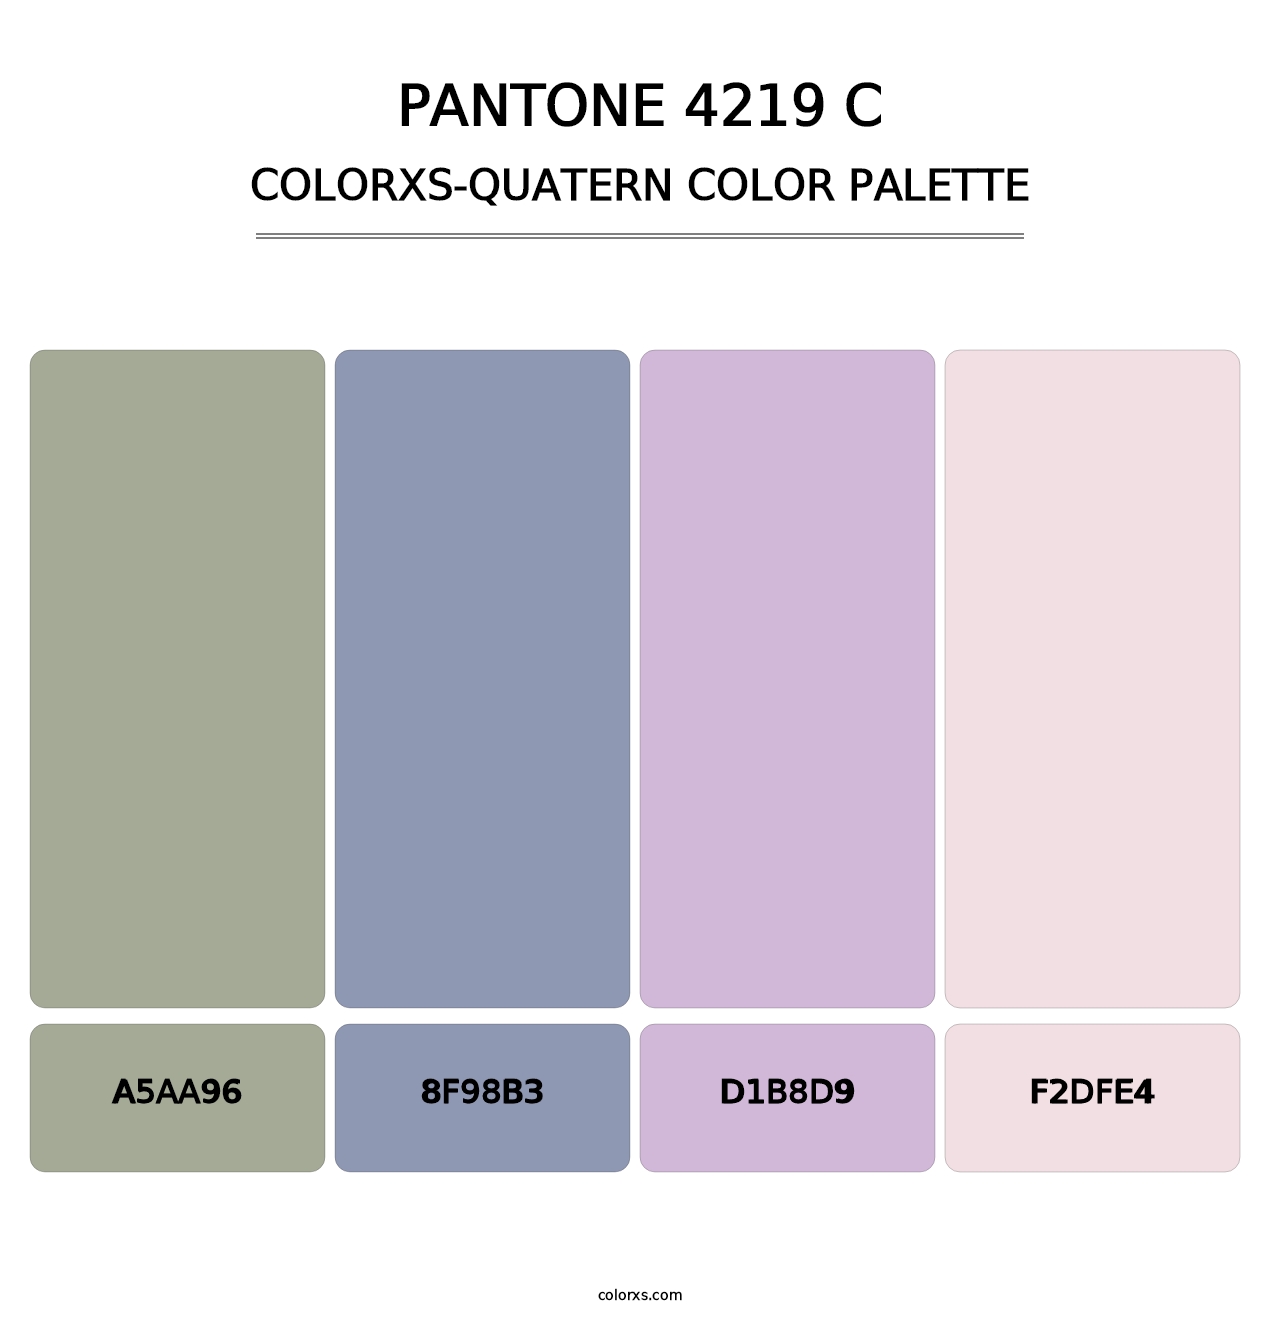 PANTONE 4219 C - Colorxs Quatern Palette